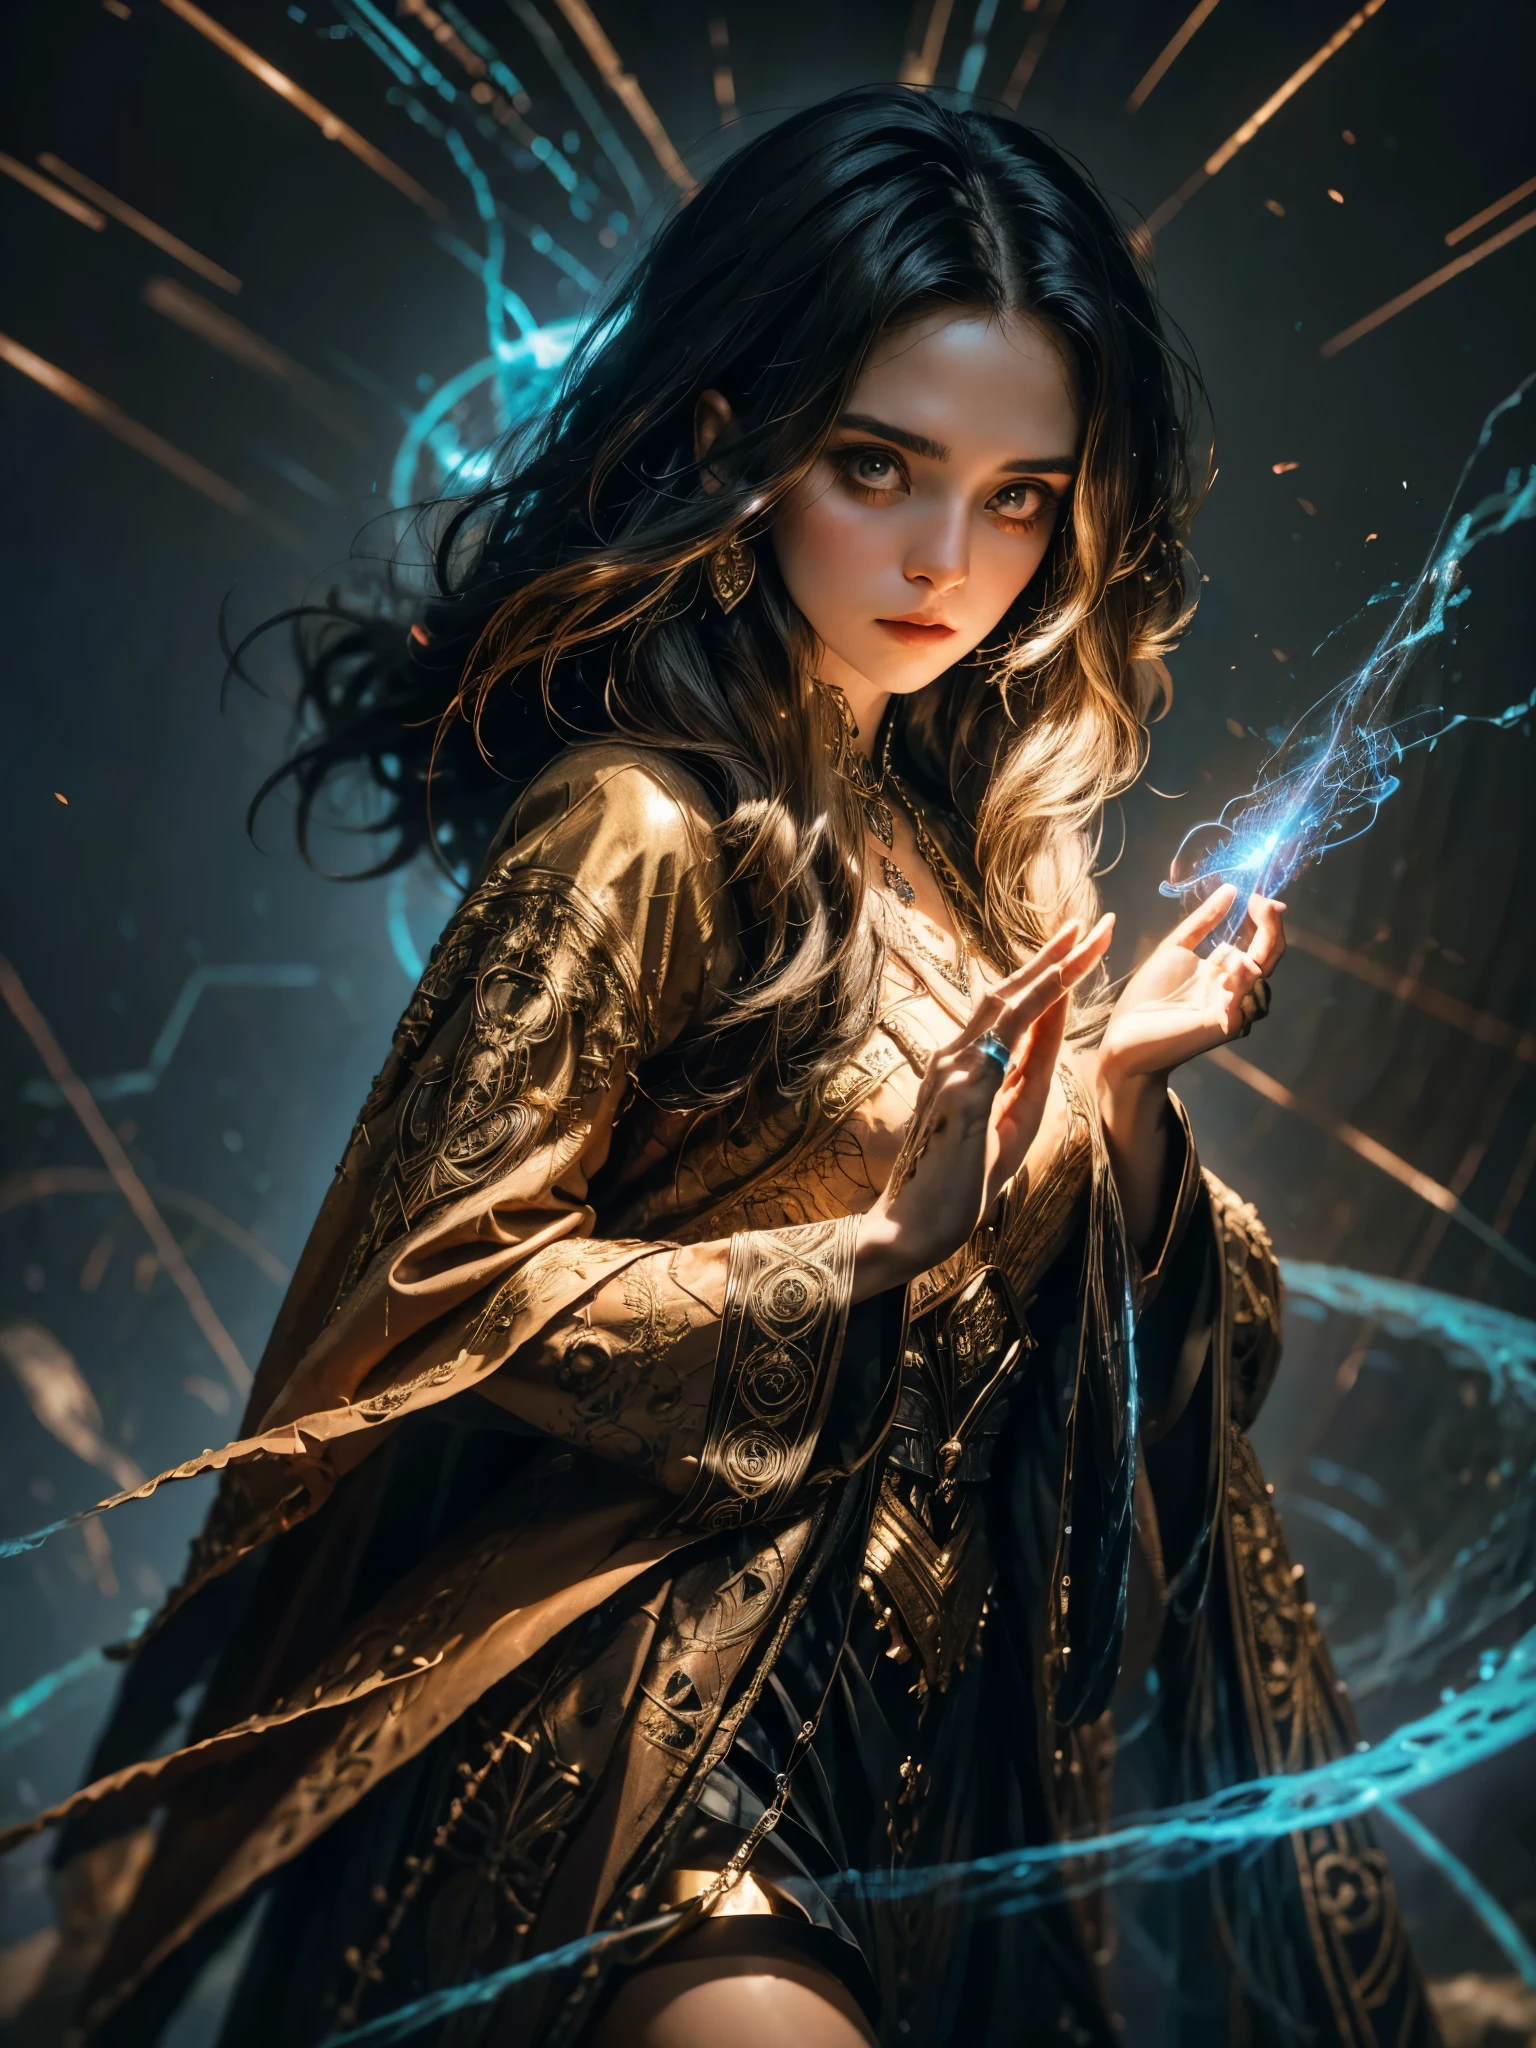 Une jeune sorcière se tient prête, une main levée, ses doigts tissent délicatement des motifs complexes dans l&#39;air alors qu&#39;elle canalise l&#39;énergie magique. Ses robes vibrantes flottent autour d&#39;elle, orné de runes et de symboles complexes qui semblent scintiller d&#39;un pouvoir arcanique. Ses yeux brillent de détermination, et des volutes d&#39;énergie magique dansent autour d&#39;elle alors qu&#39;elle se prépare à déclencher un puissant sort..